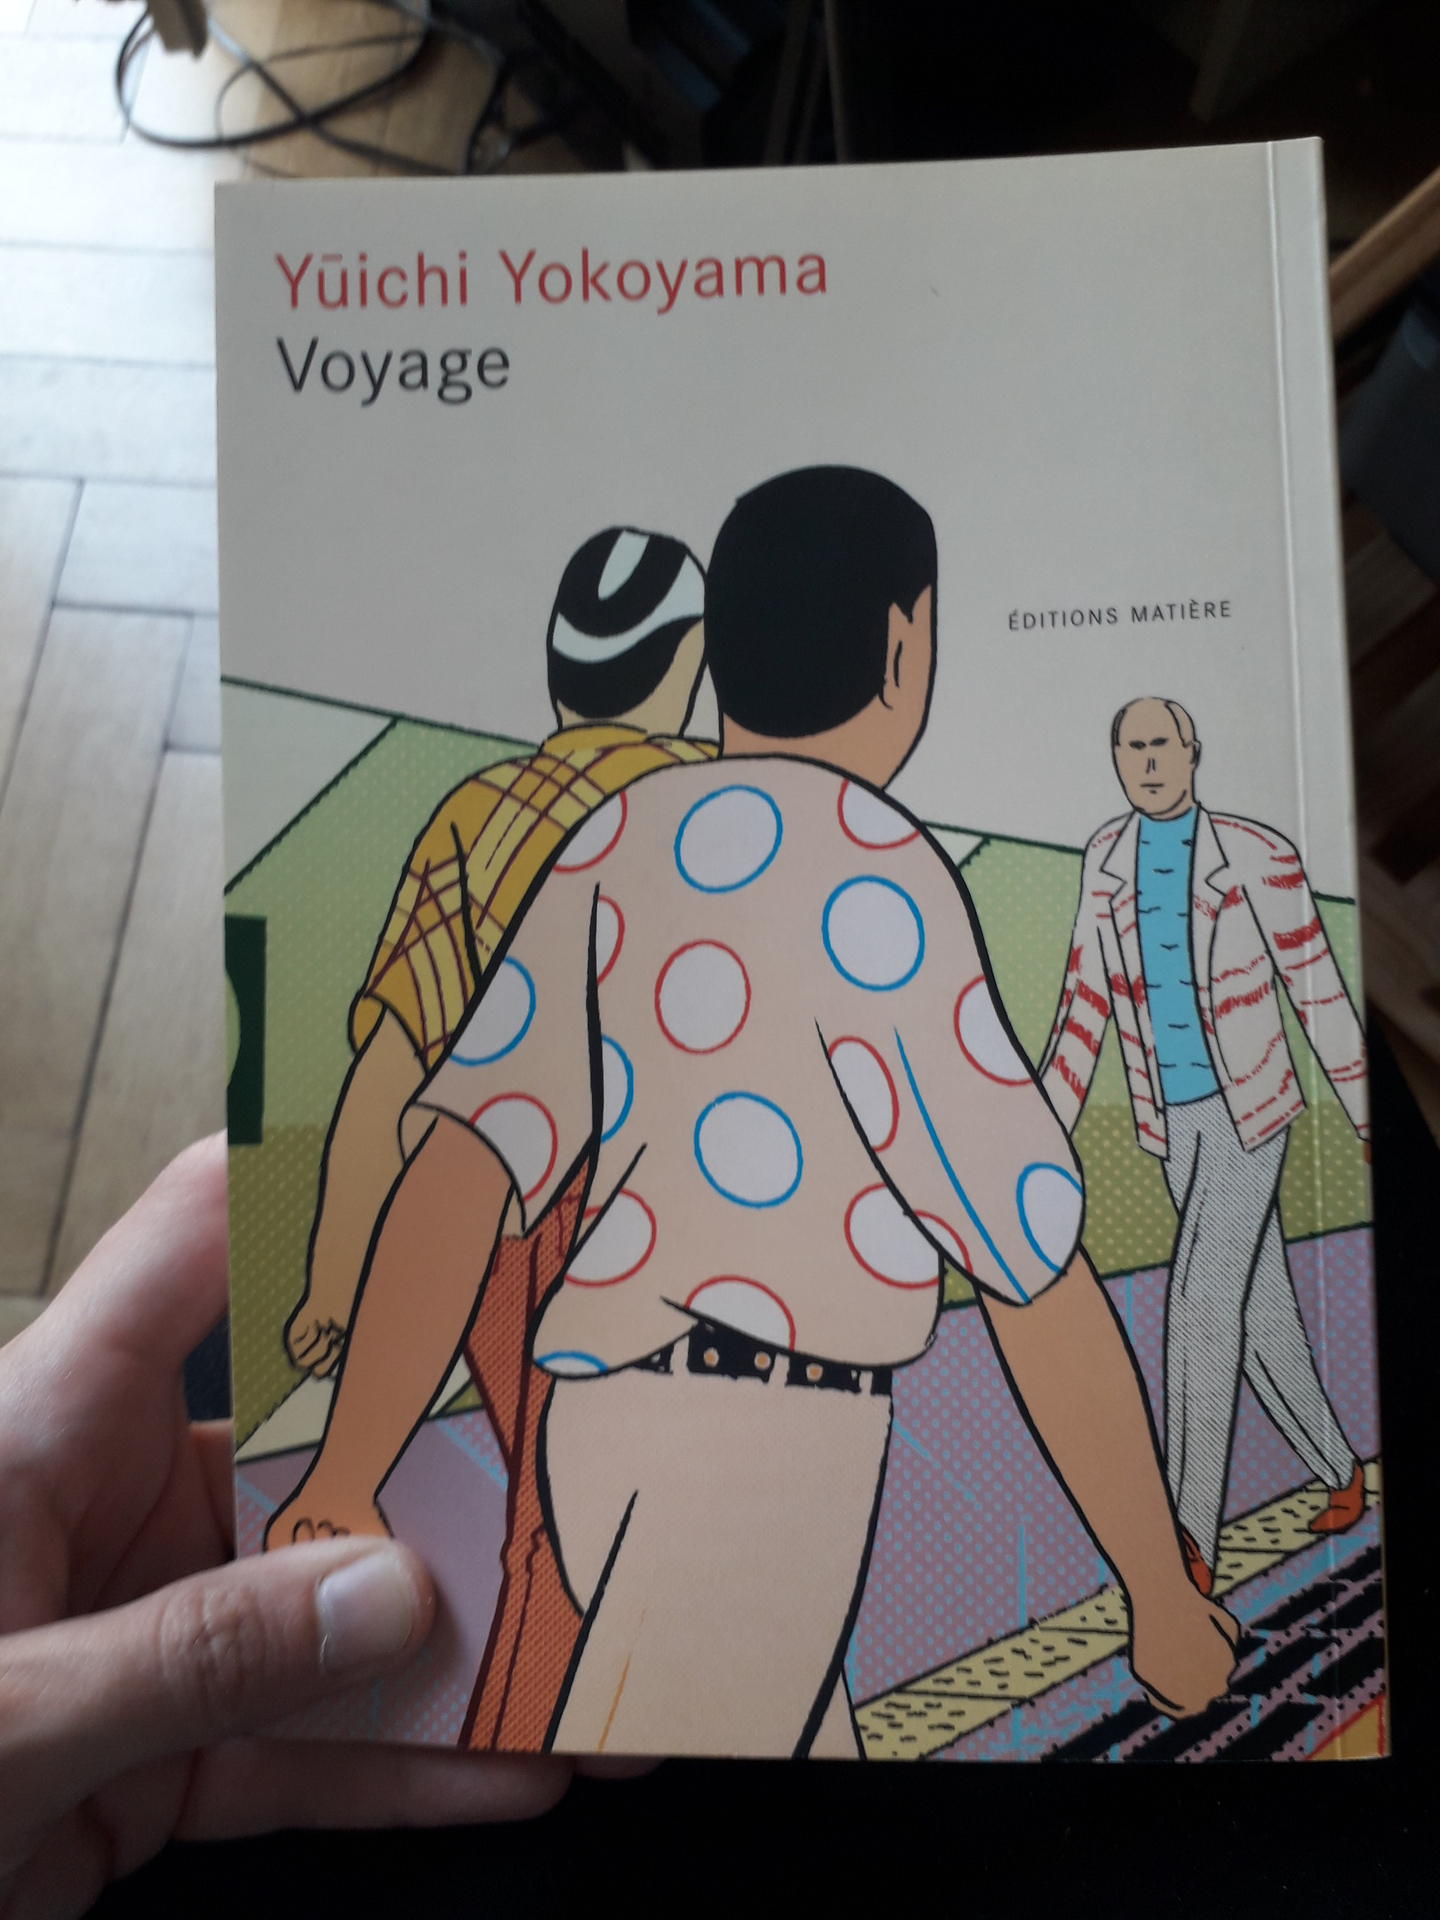 Image 12 : Couverture couleur de la BD Voyage de Yokoyama où des personnages en mouvement se croisent